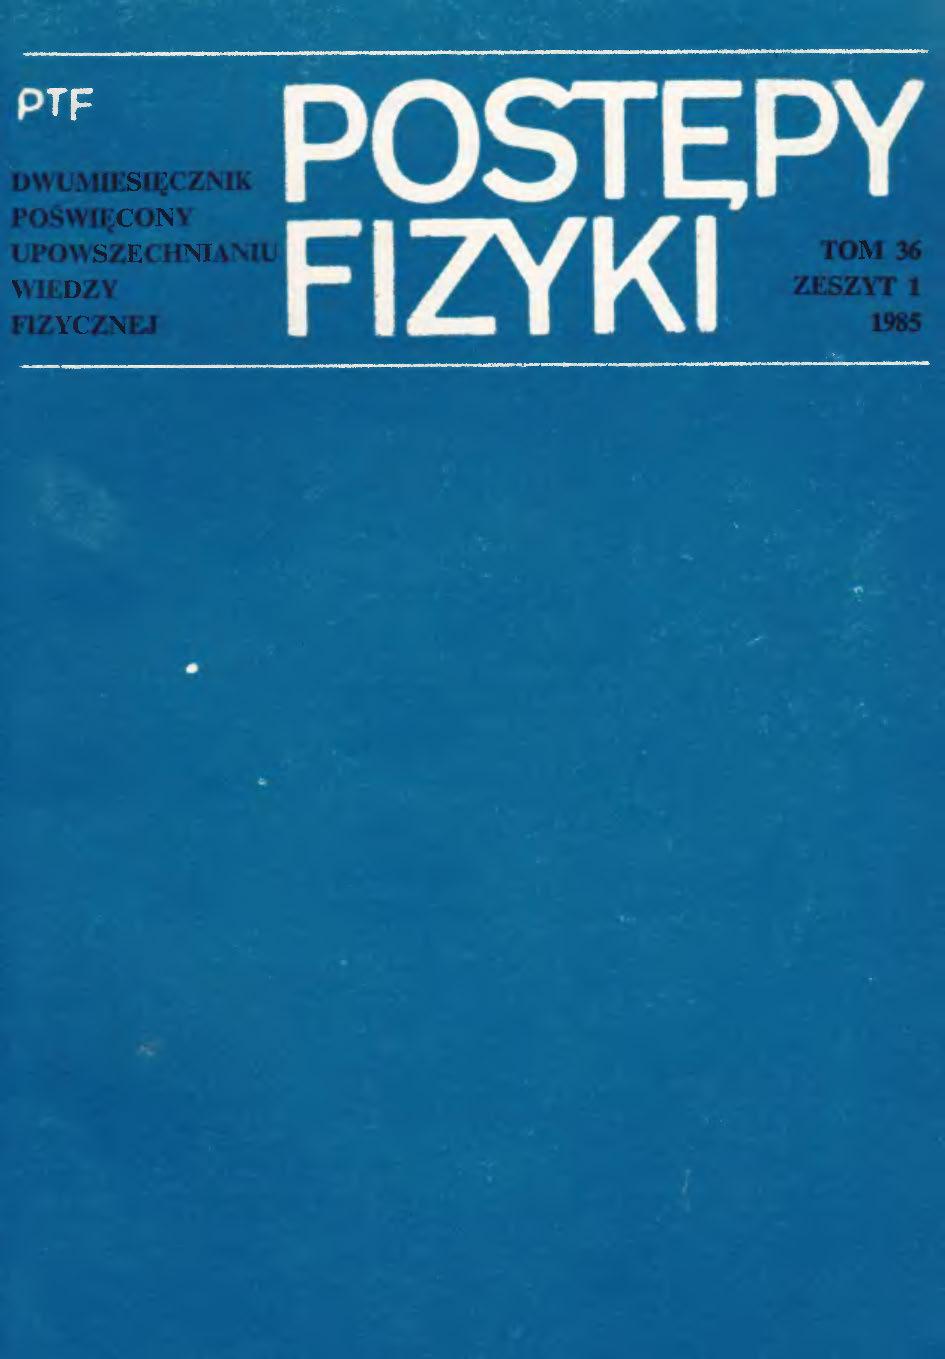 Postępy Fizyki 36 (1) 1985